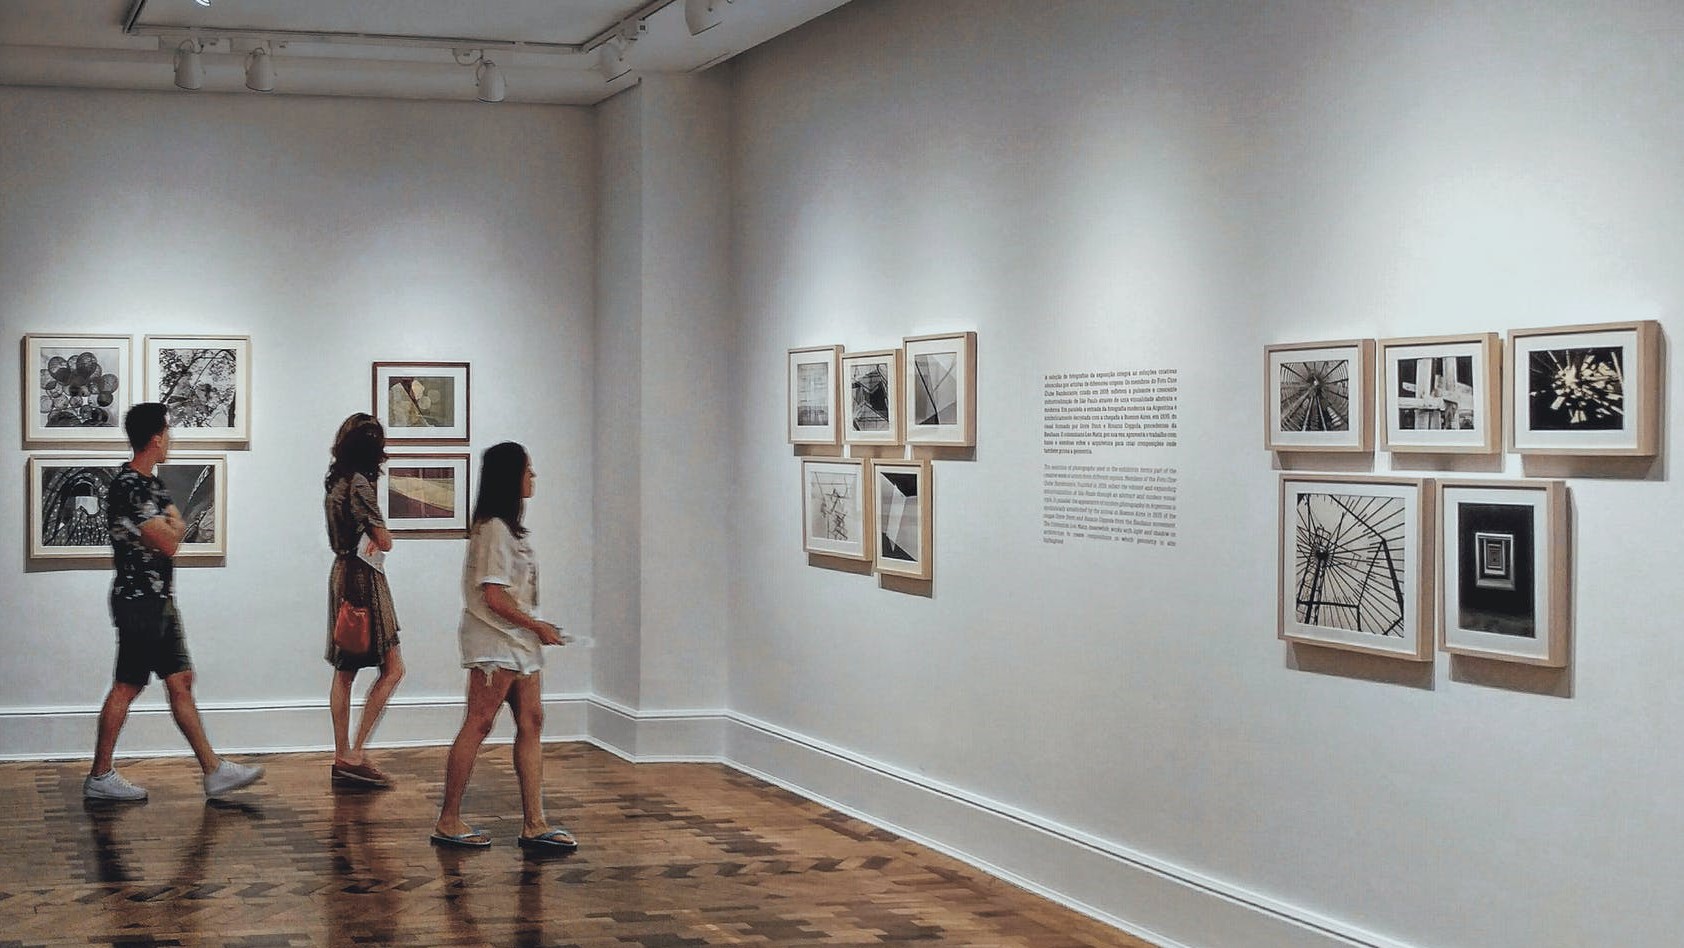 图片展示了三个人在画廊内参观挂在白墙上的不同风格的黑白照片，环境宁静且光线柔和。